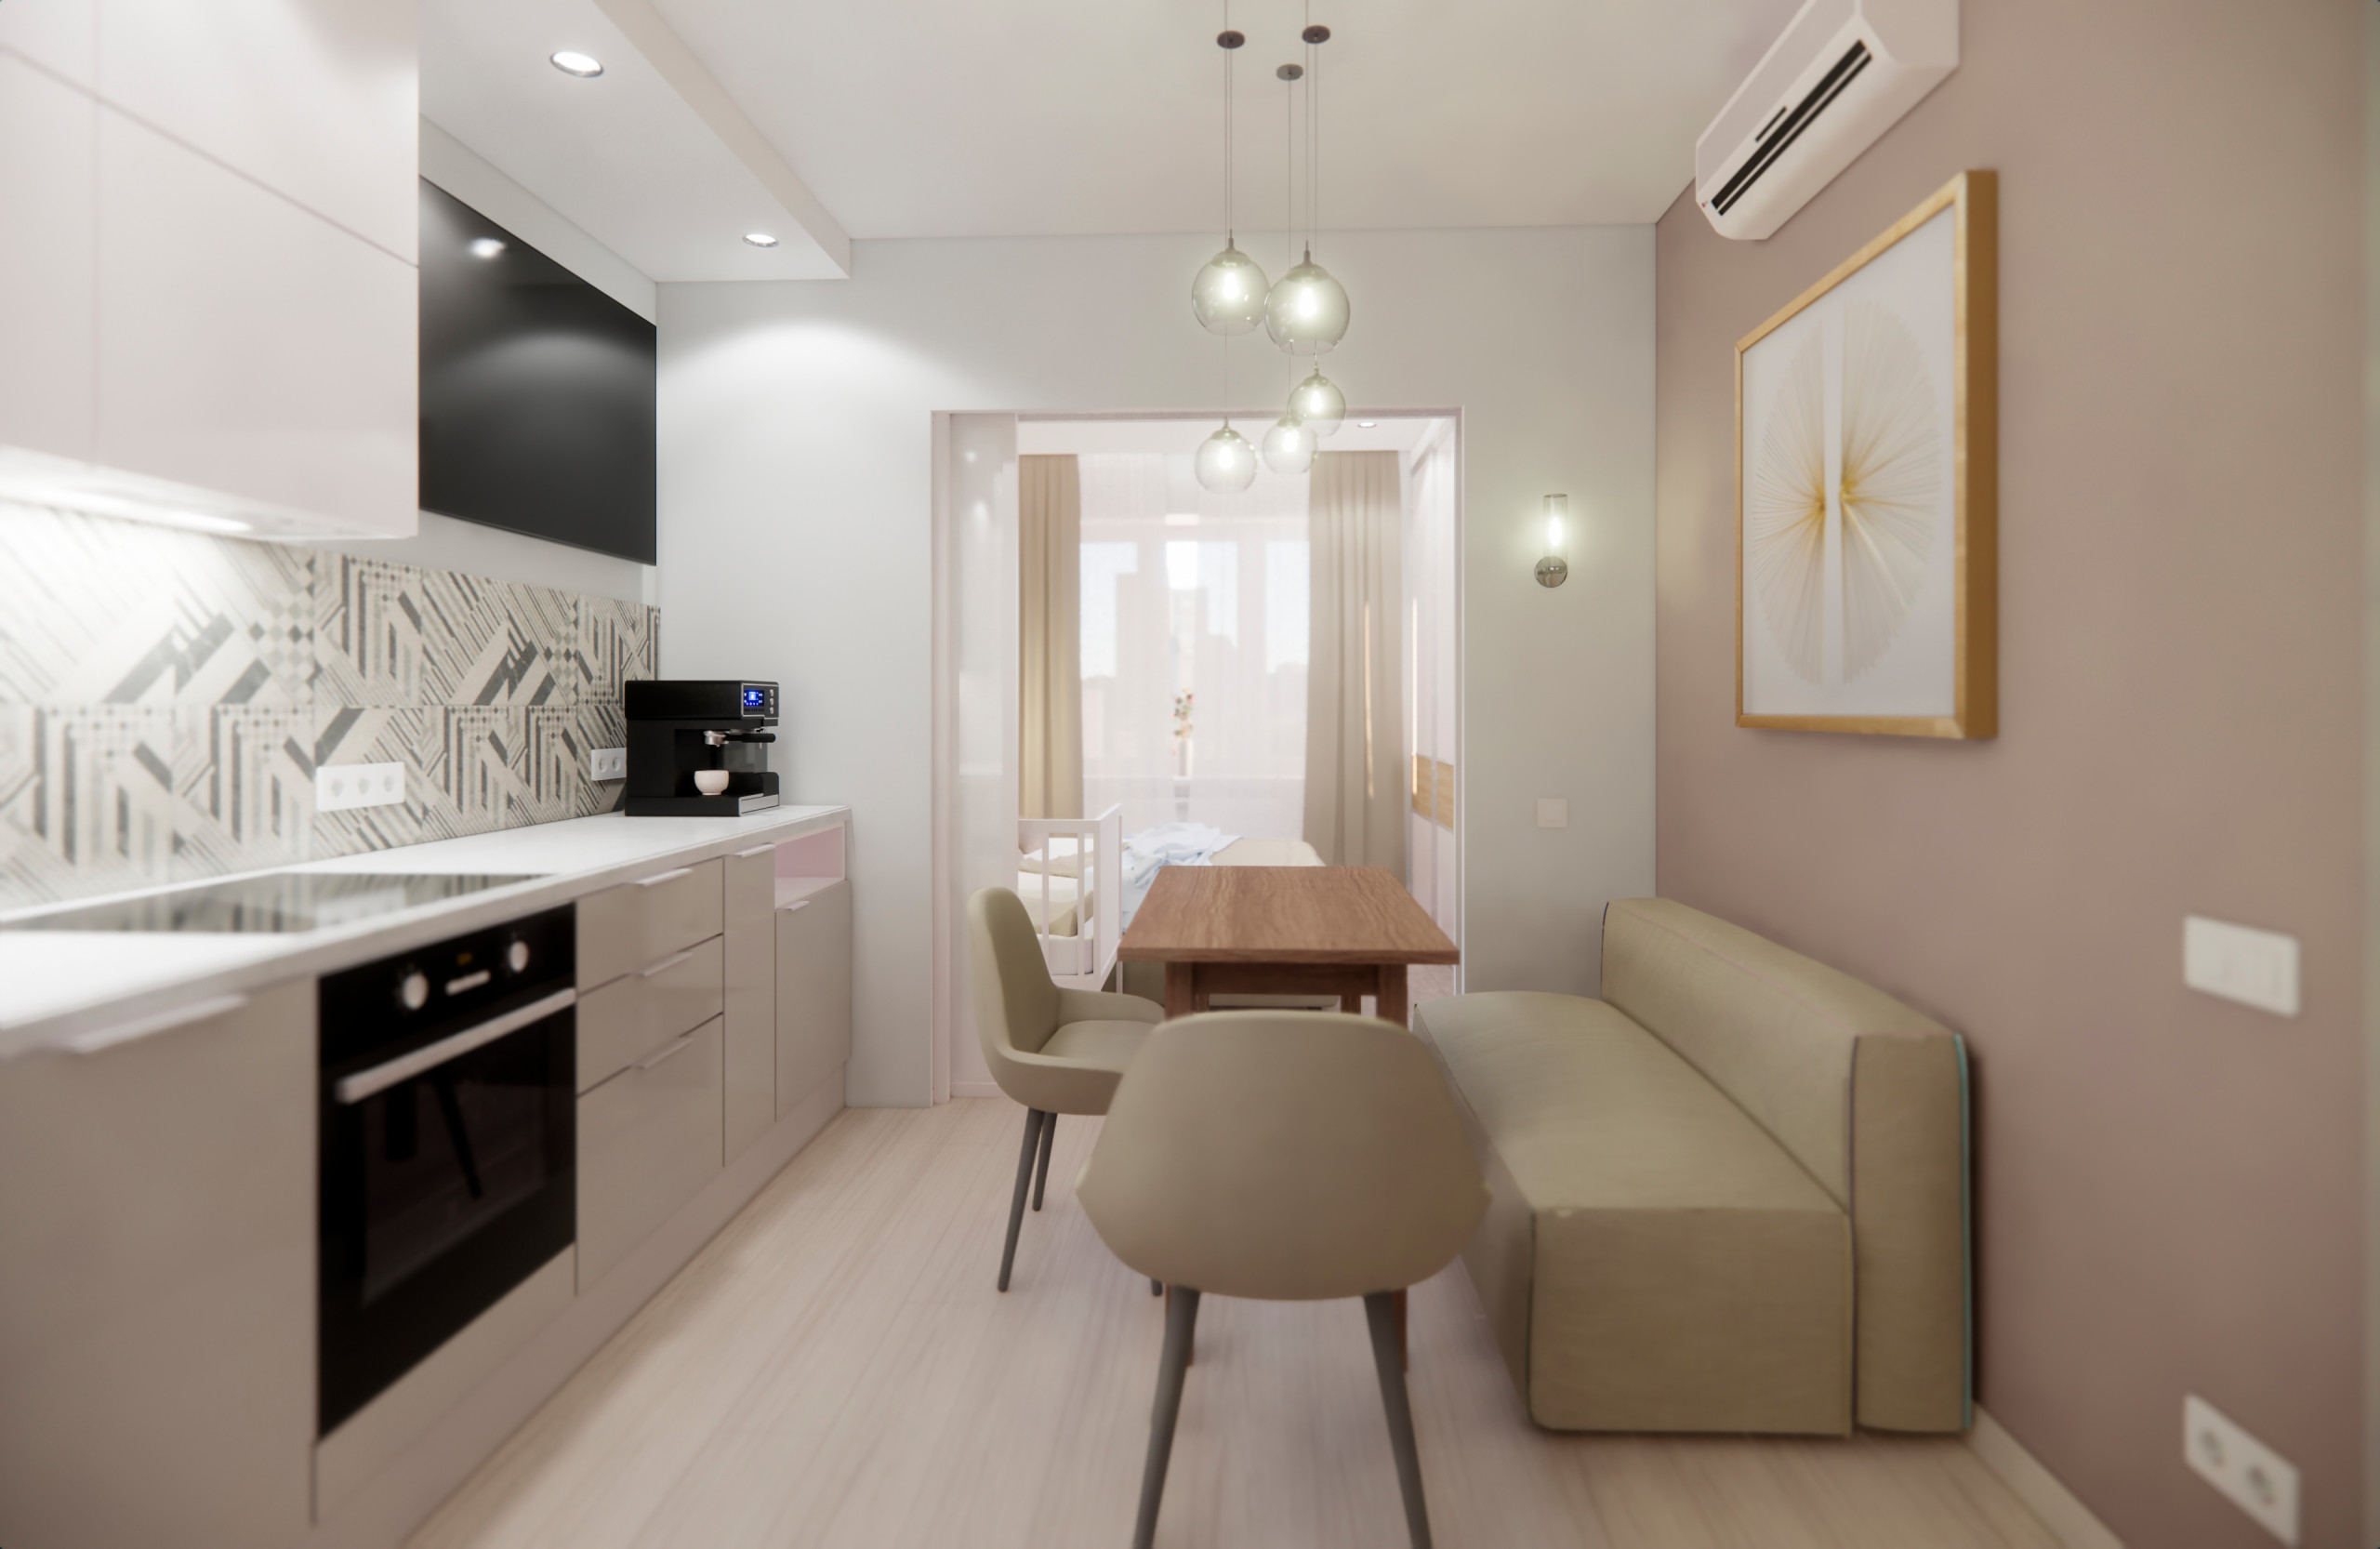 Квартира в минималистичном стиле в Пушкино - прихожая, кухня и гостиная